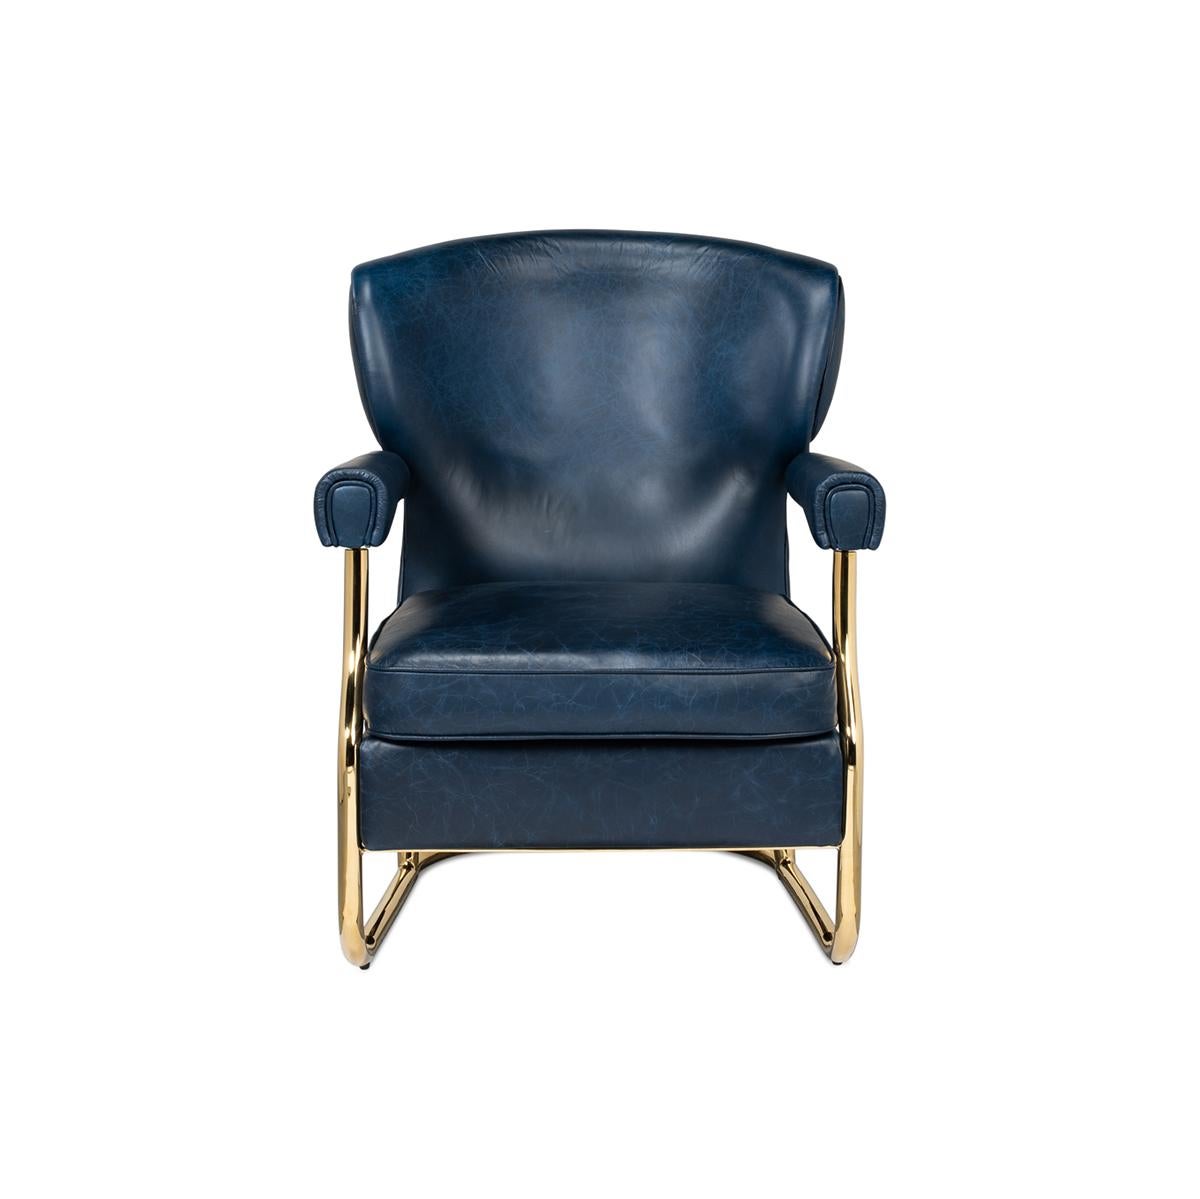 Mit gebogener Rückenlehne und gepolstertem Sitz im Vintage-Stil in Chateau Blue. Der Rahmen aus Metallrohr im industriellen Stil ist in einem sanften Messington gehalten.

Abmessungen: 28